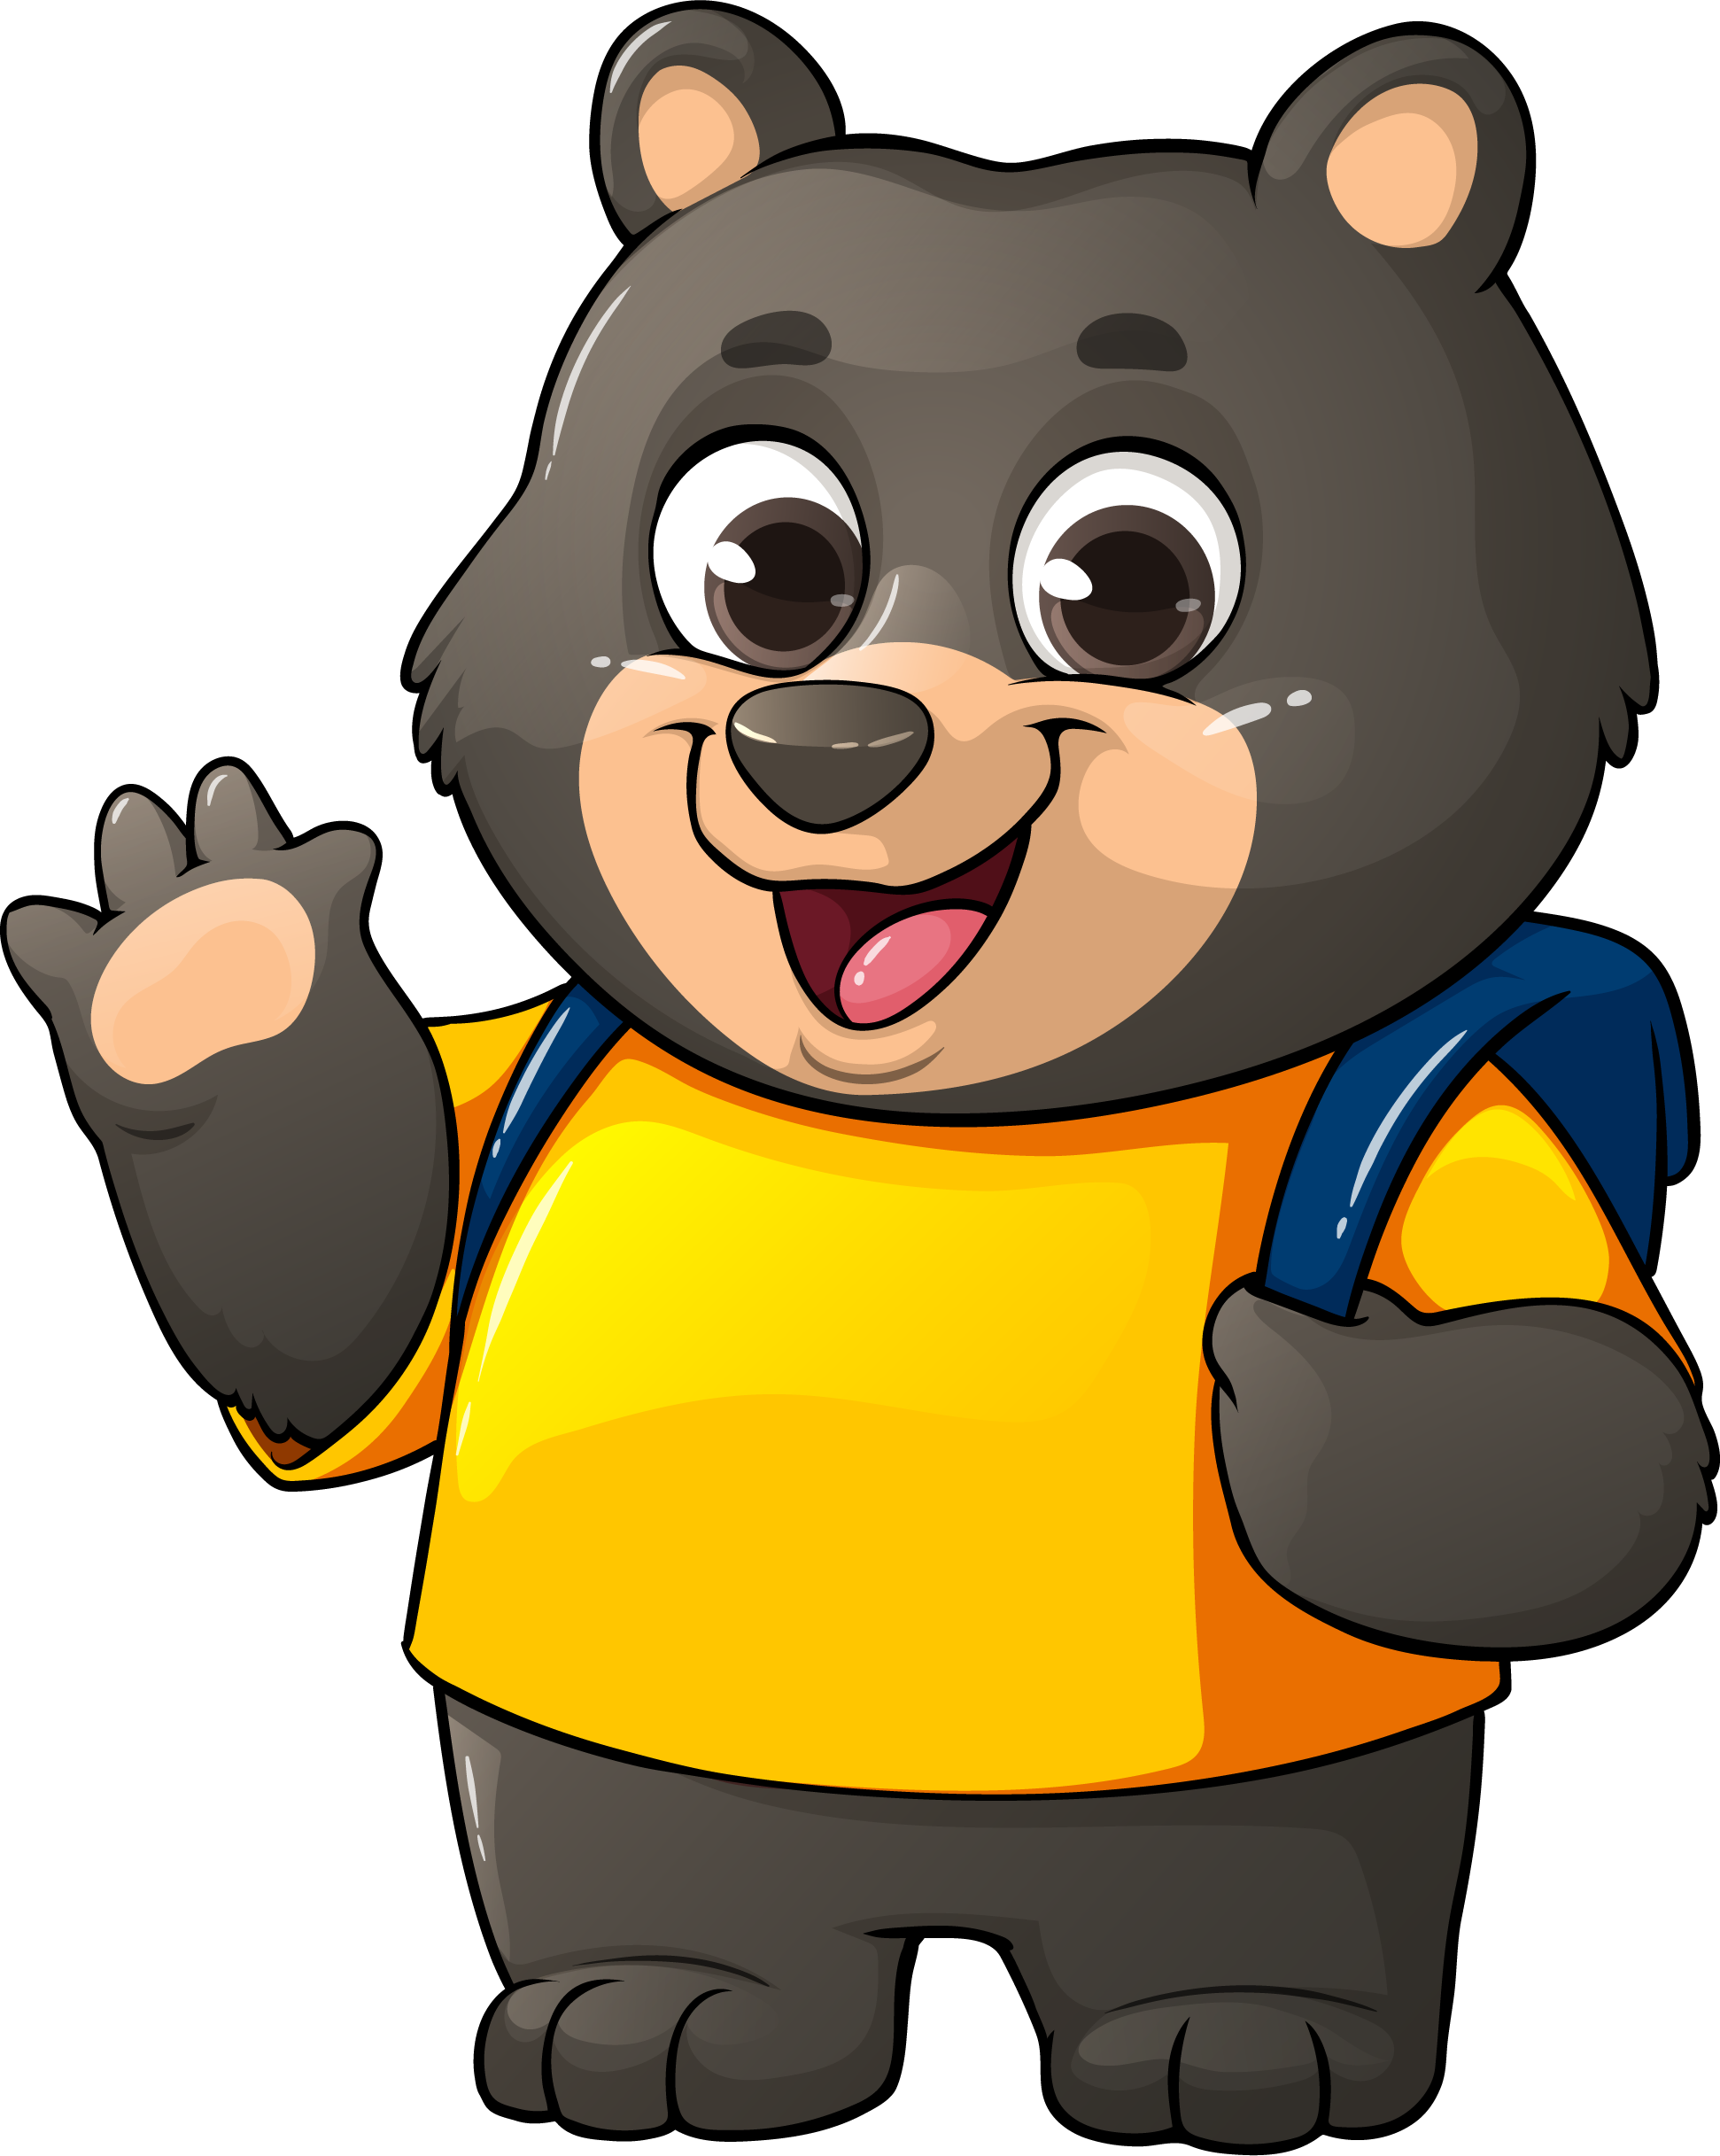 Cartoon bear cub waving